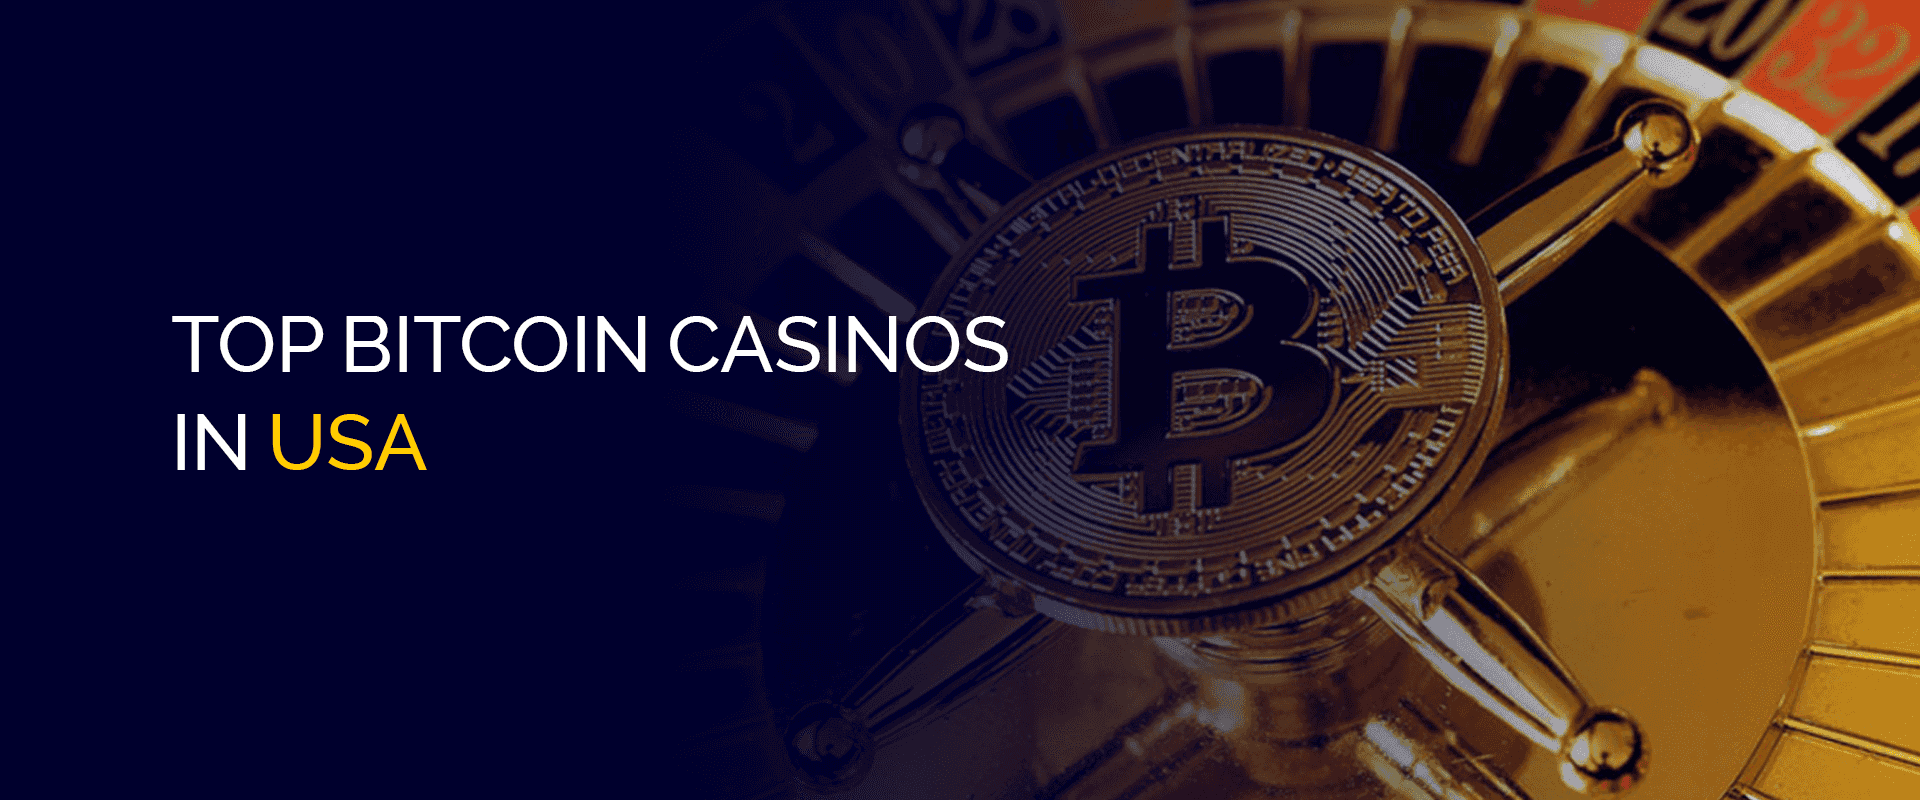 Déi bescht Bitcoin Casinoen an den USA